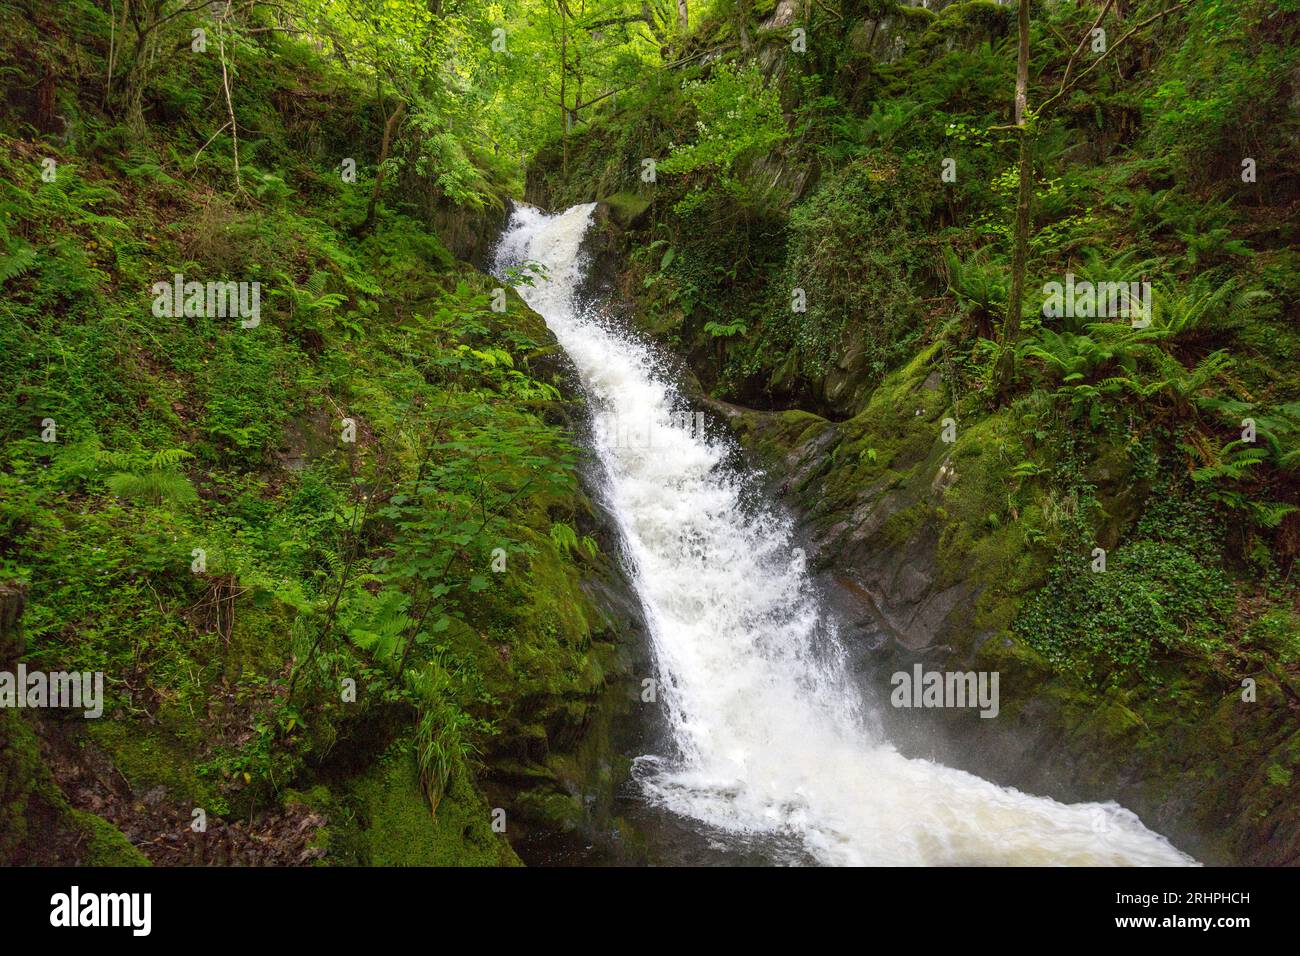 L'acqua bianca del torrente Nant Dôl-goch ruggisce lungo una delle cascate inferiori di Dolgoch Falls, nr Tywyn, Gwynedd, Galles, Regno Unito Foto Stock